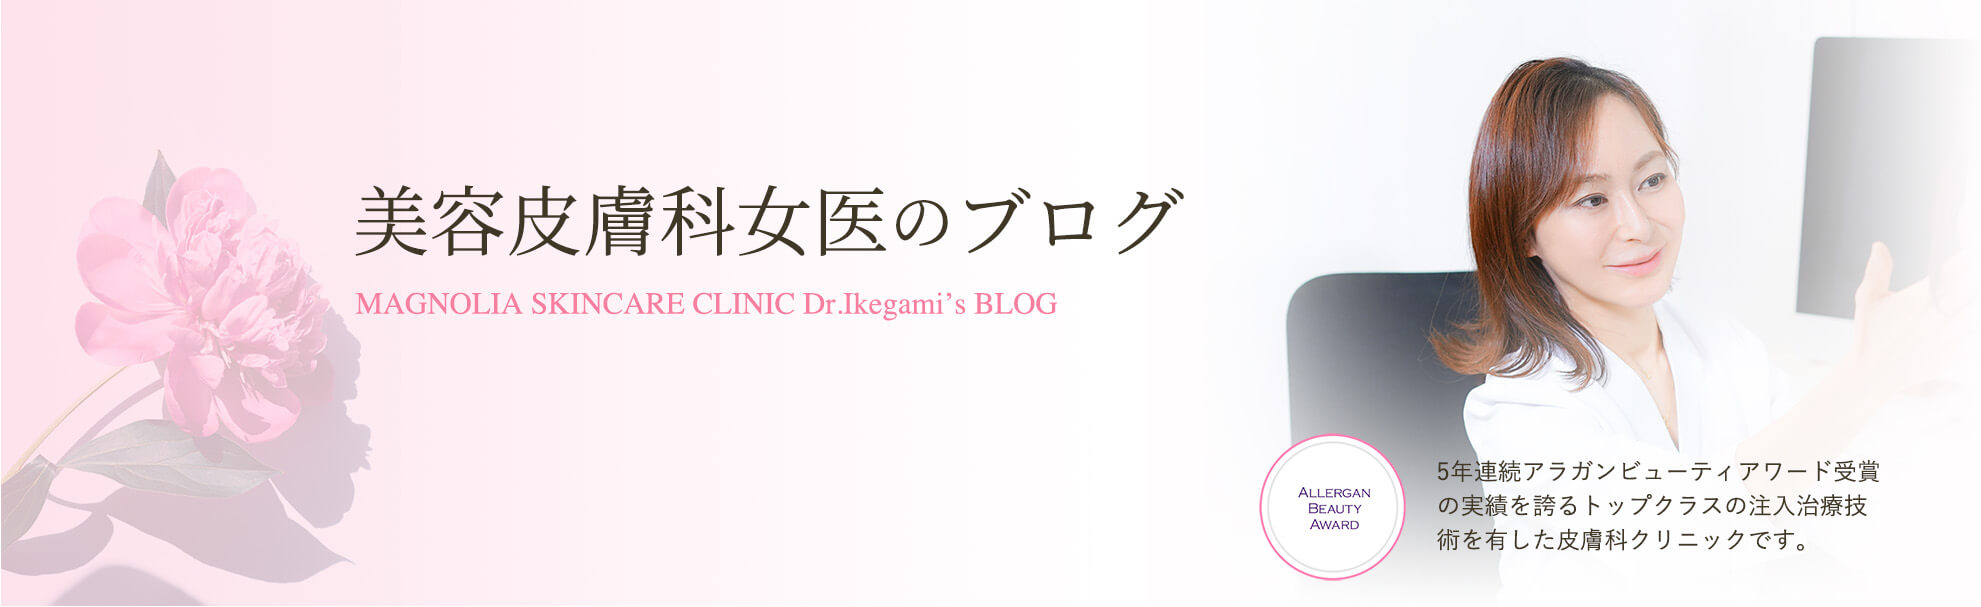 美容皮膚科女医のブログのキービジュアル